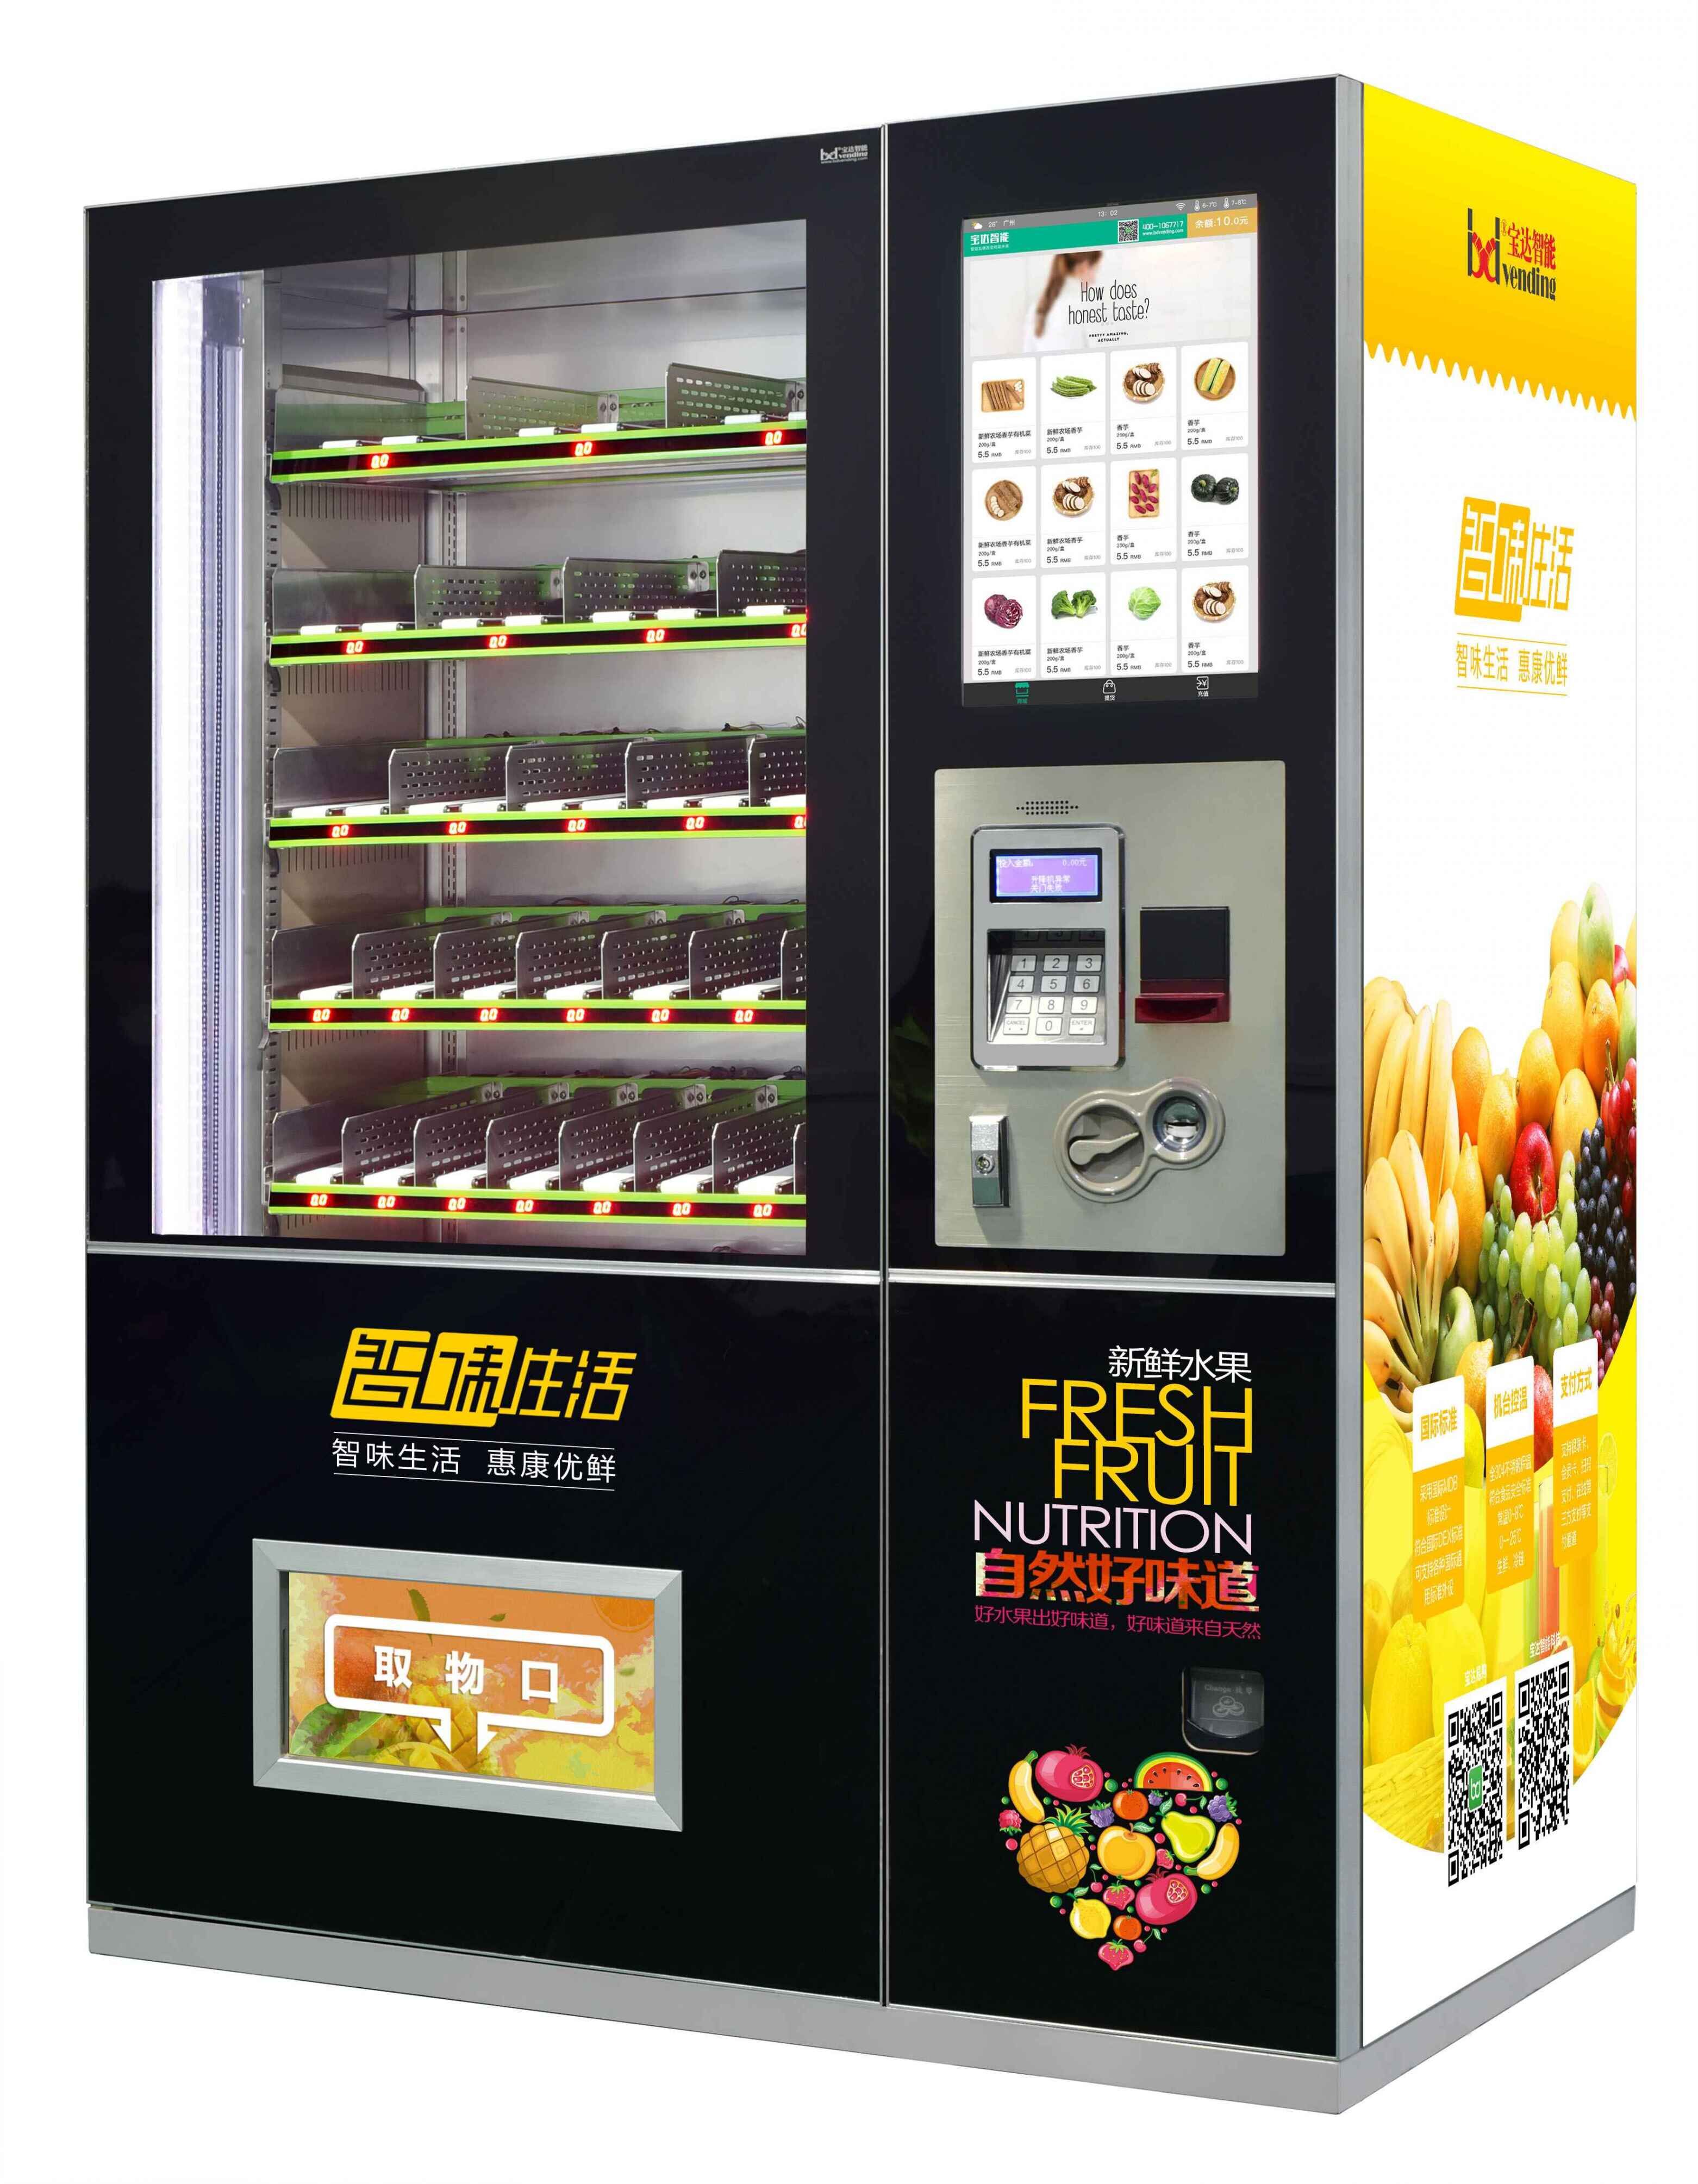 广州宝达生鲜自动售货机 蔬菜售货机 无人售货机  智能售货机专家